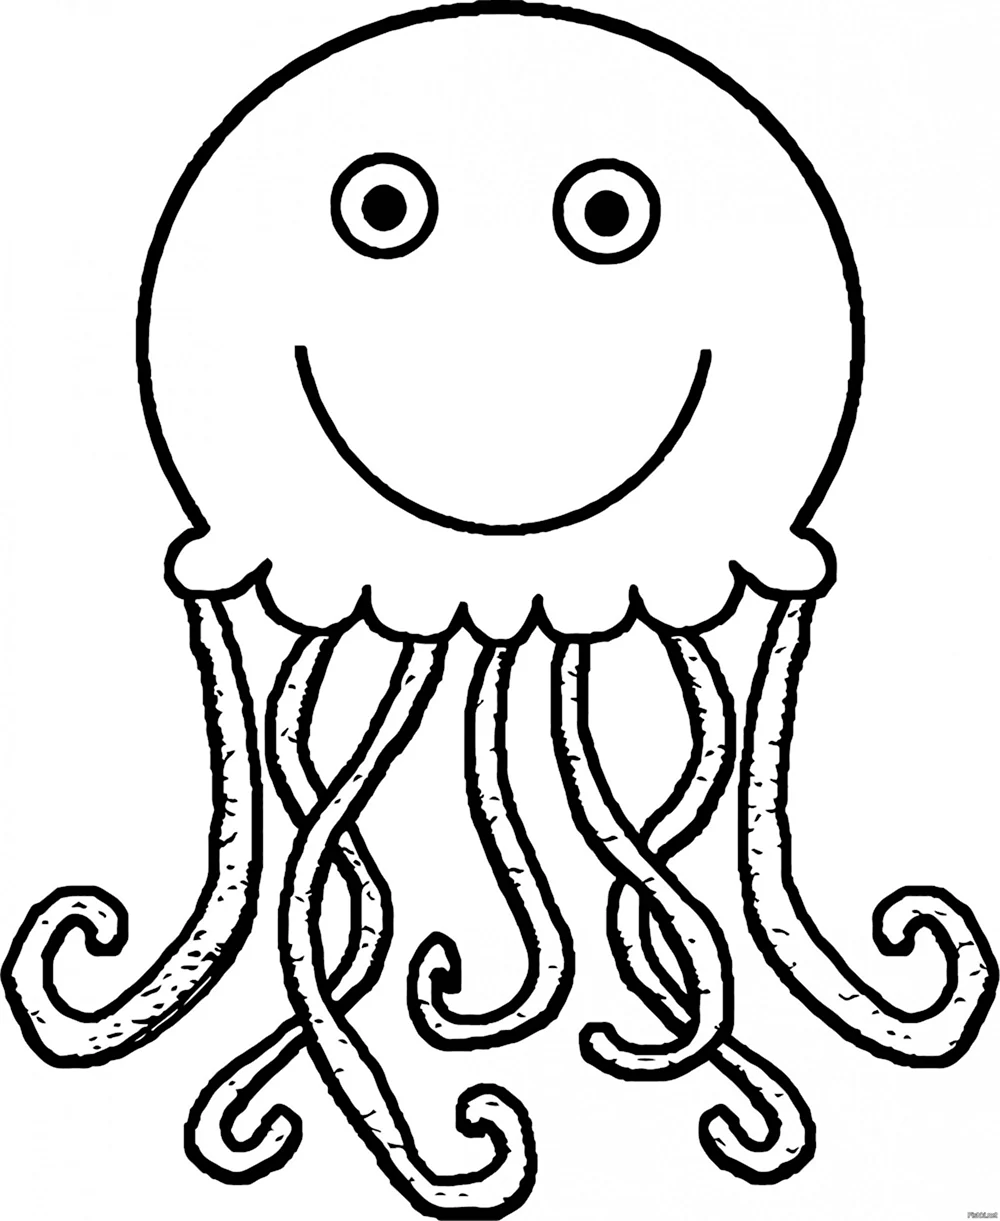 Медуза картинка для детей